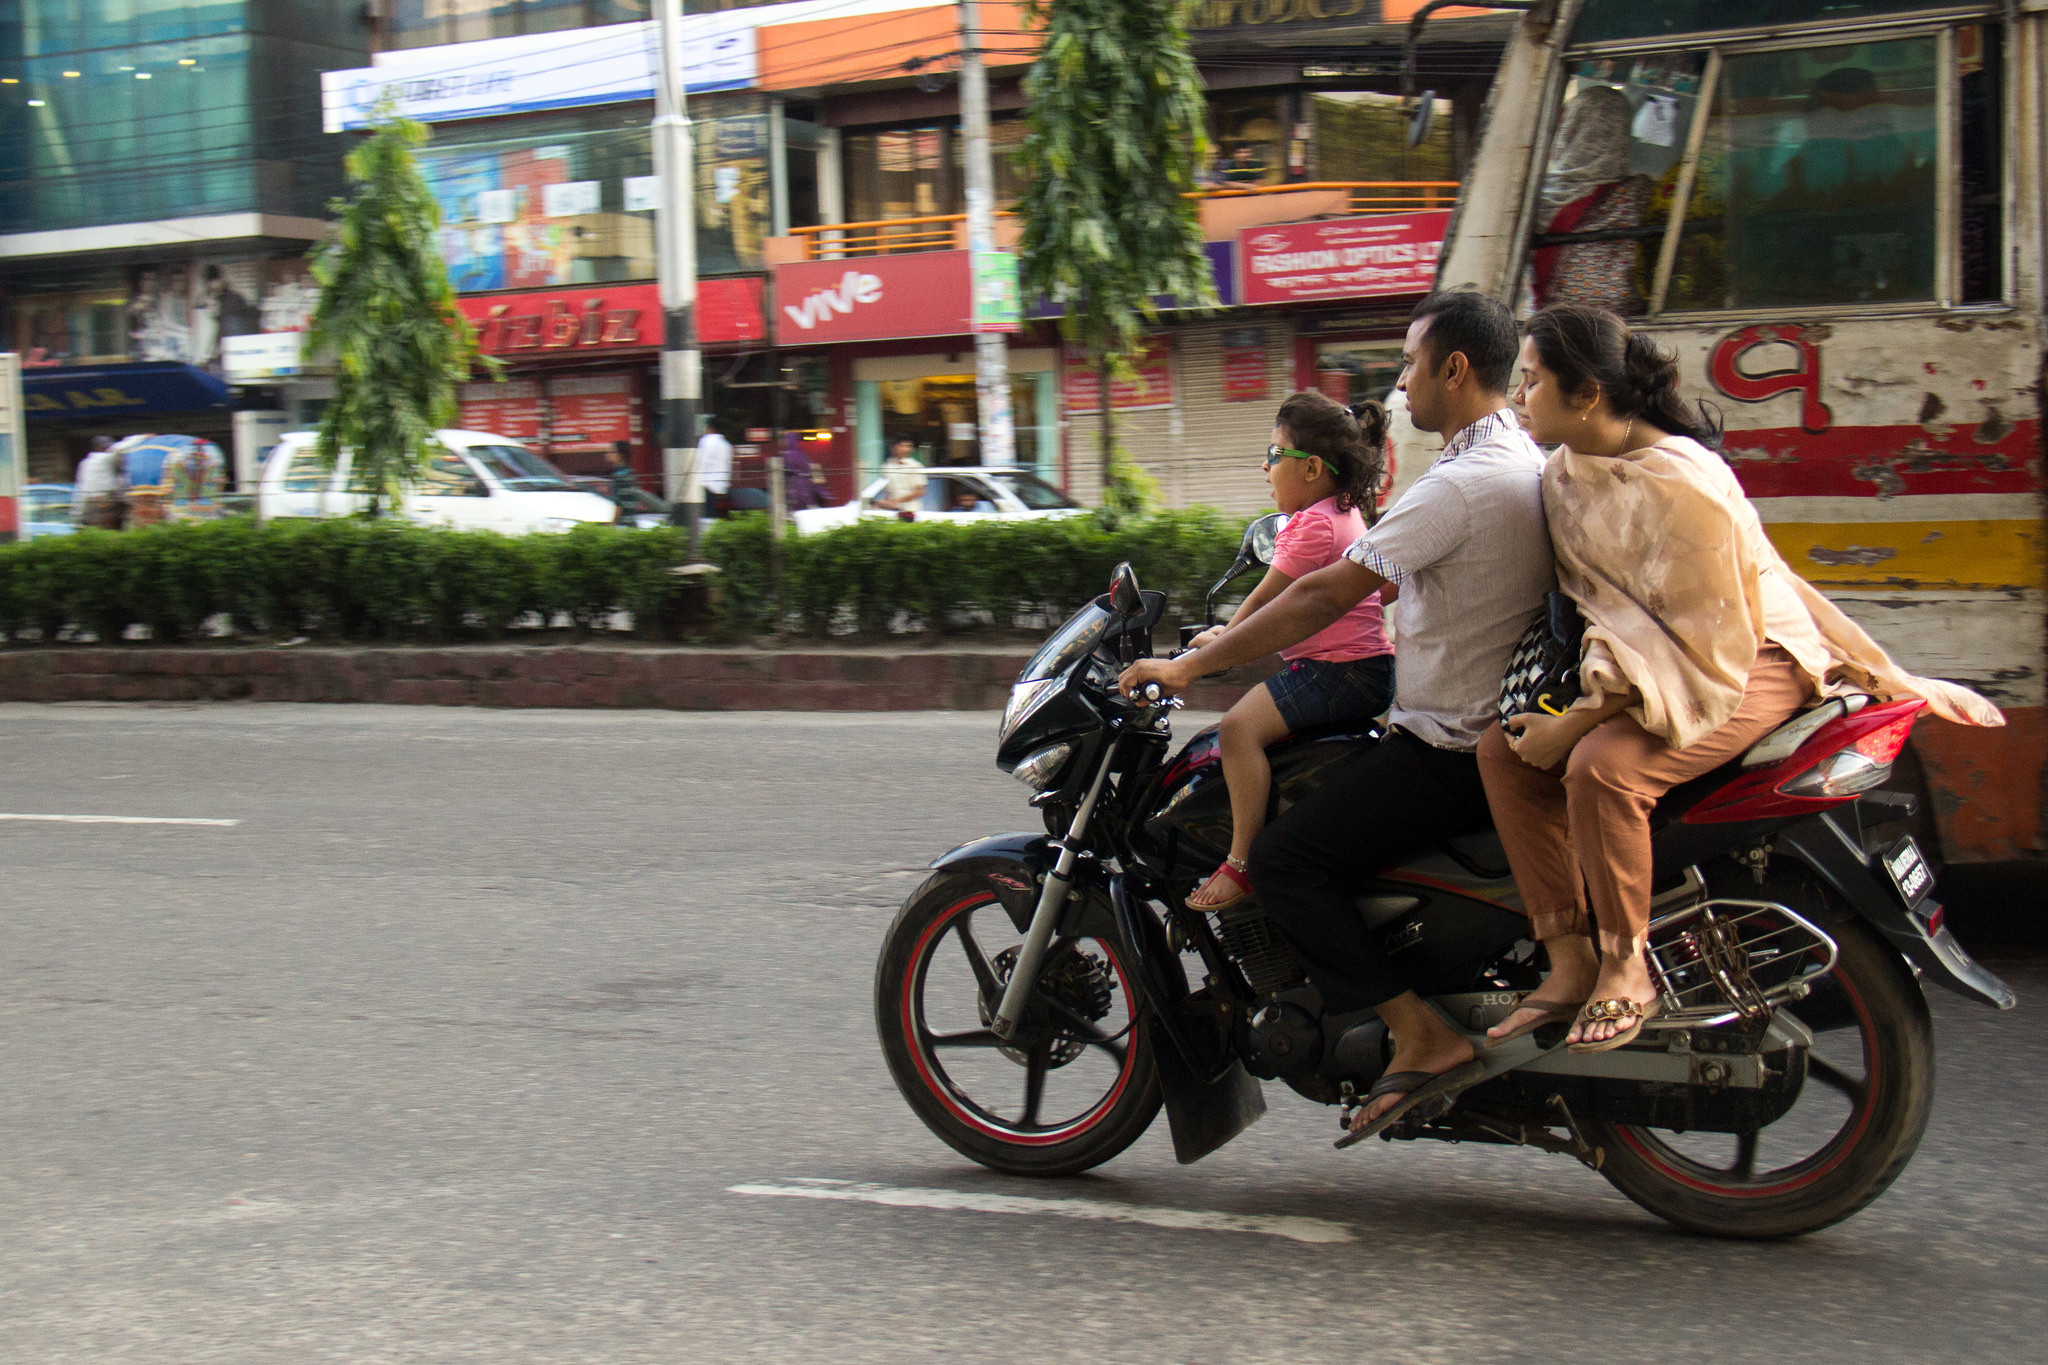 Les motocyclistes du Bangladesh ne pourront plus être servis en carburant s'ils ne portent pas de casque